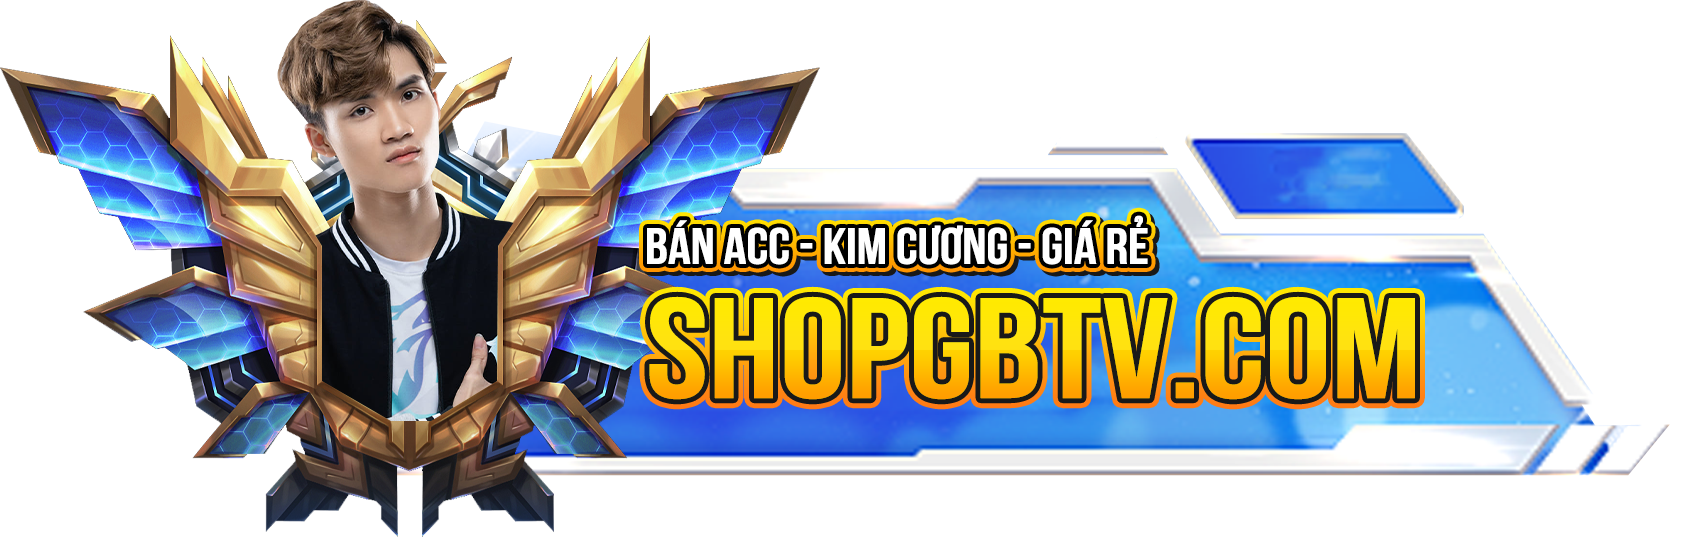 Logo Shopgbtv.com - Shop Bán Acc FreeFire Úy Tín, Giá Rẻ Số 1 Nhất Việt Nam